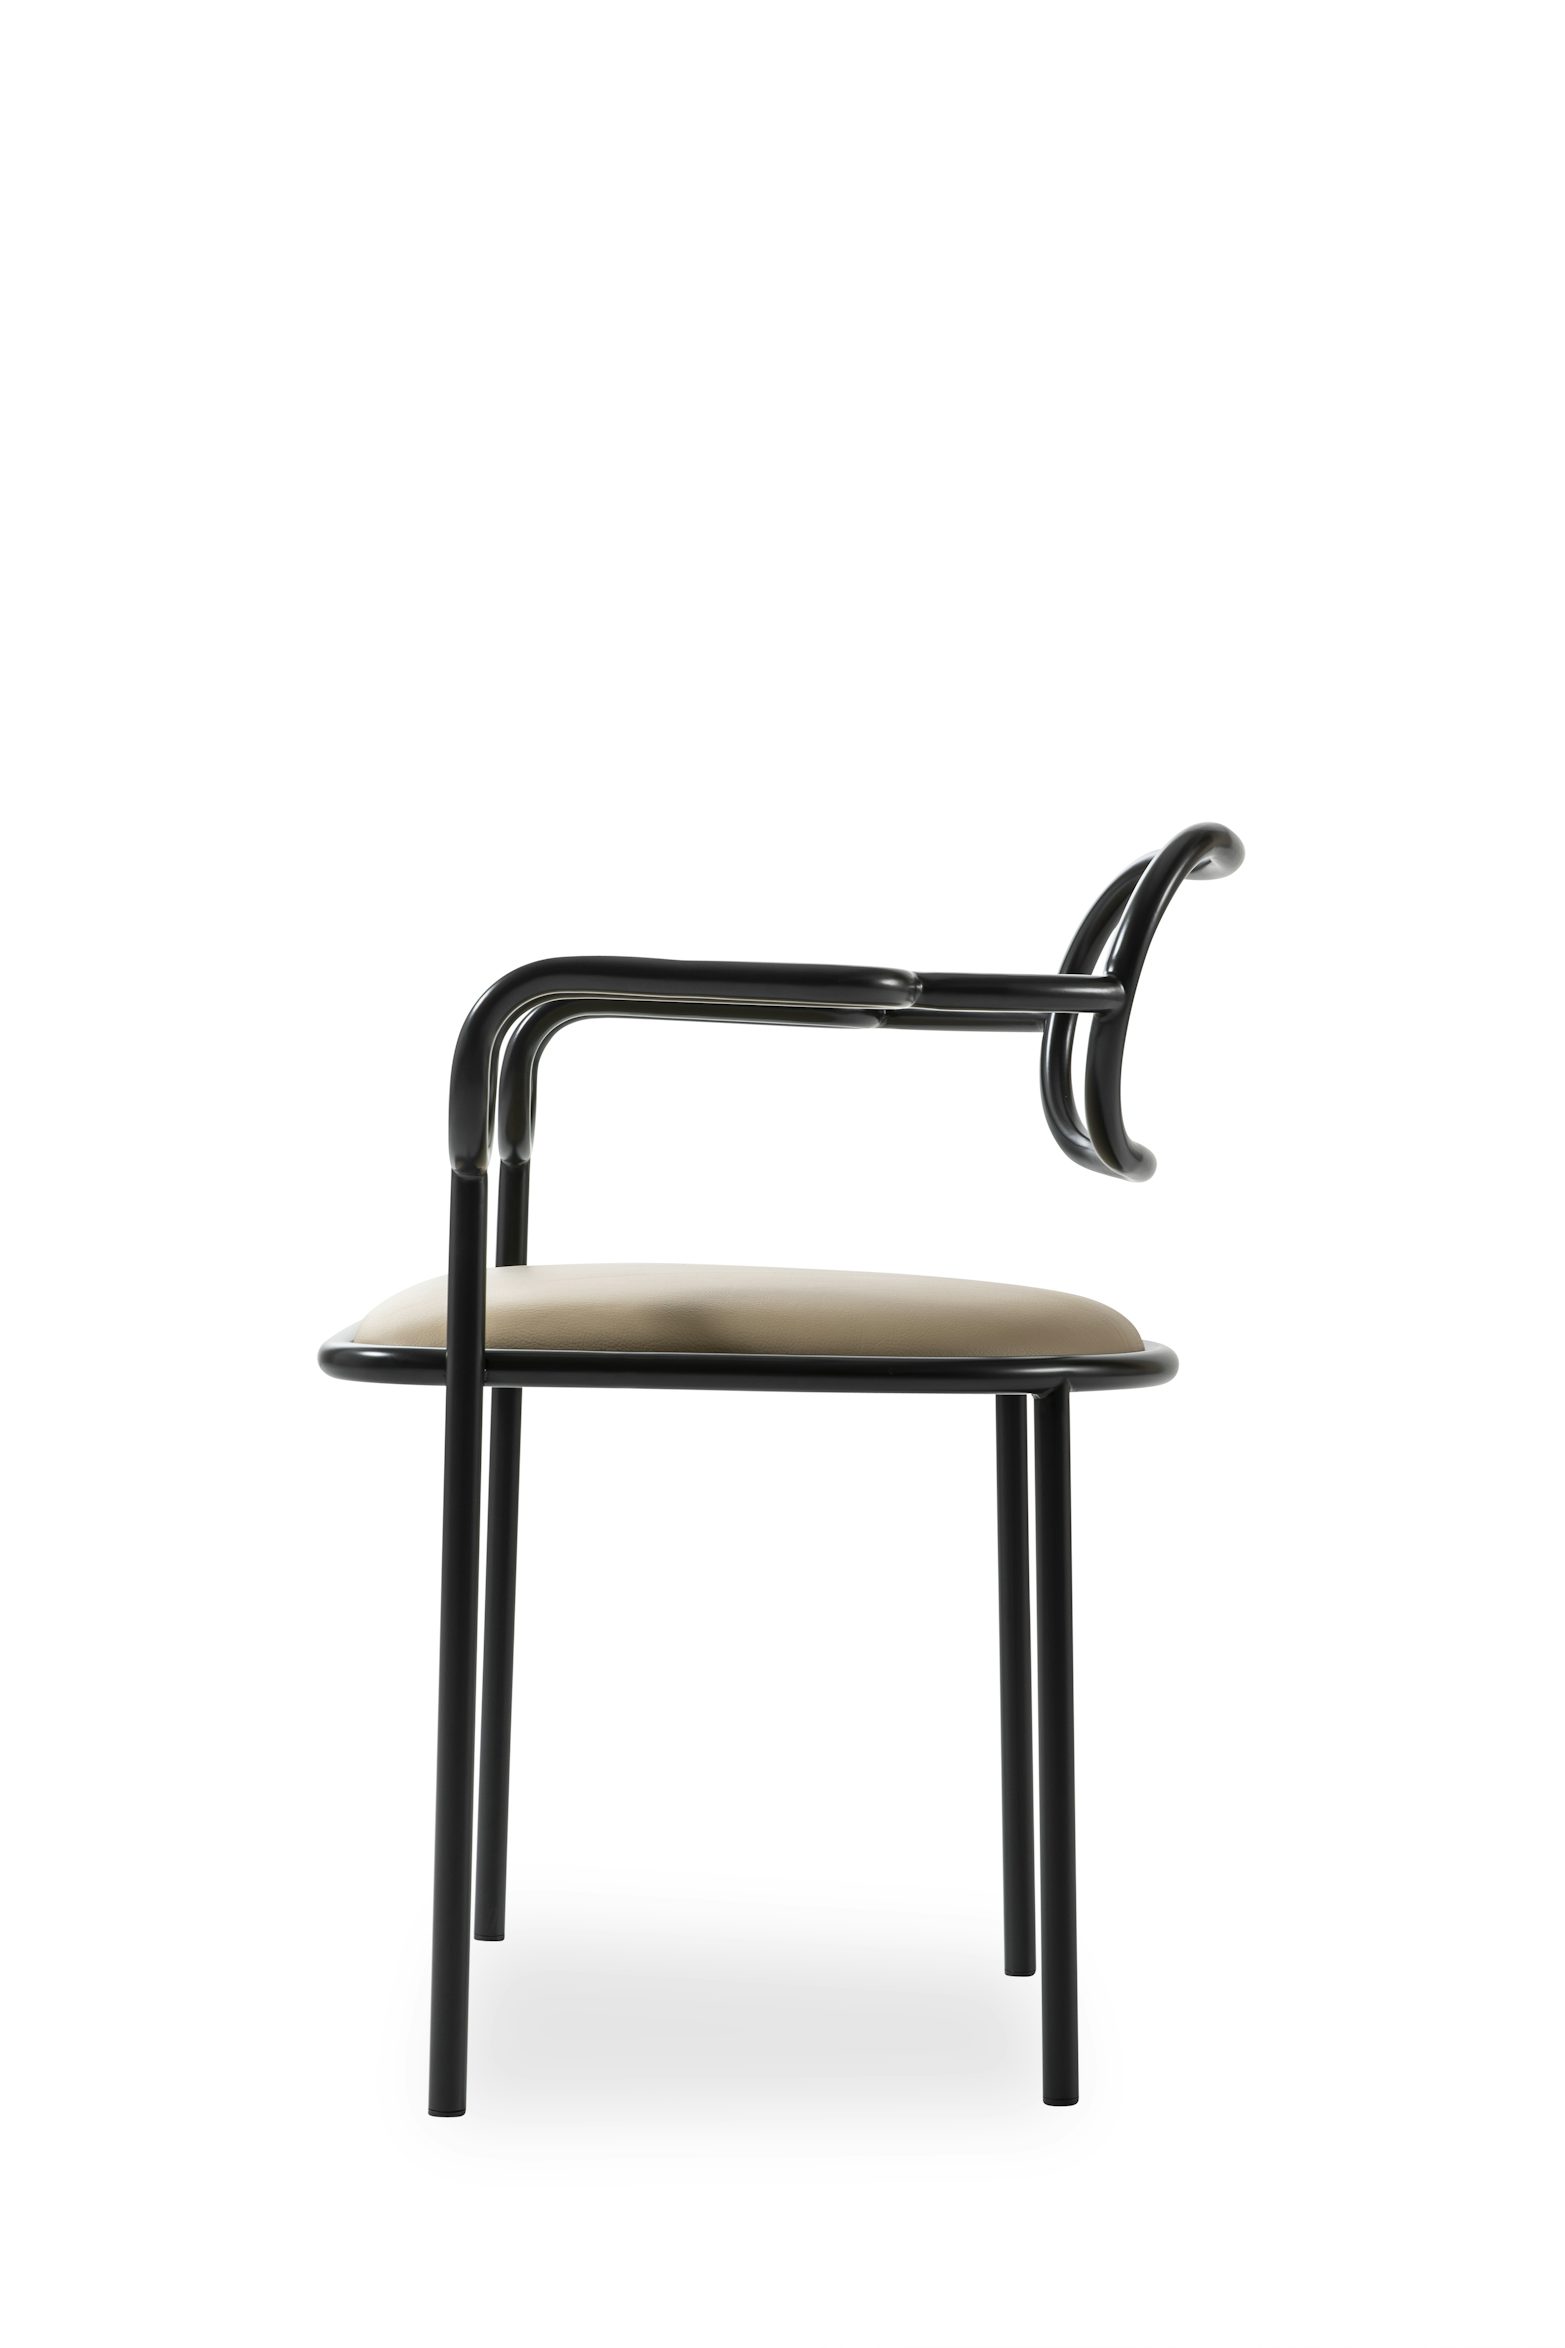 01 Chair Shiro Kuramata Cappellini 3